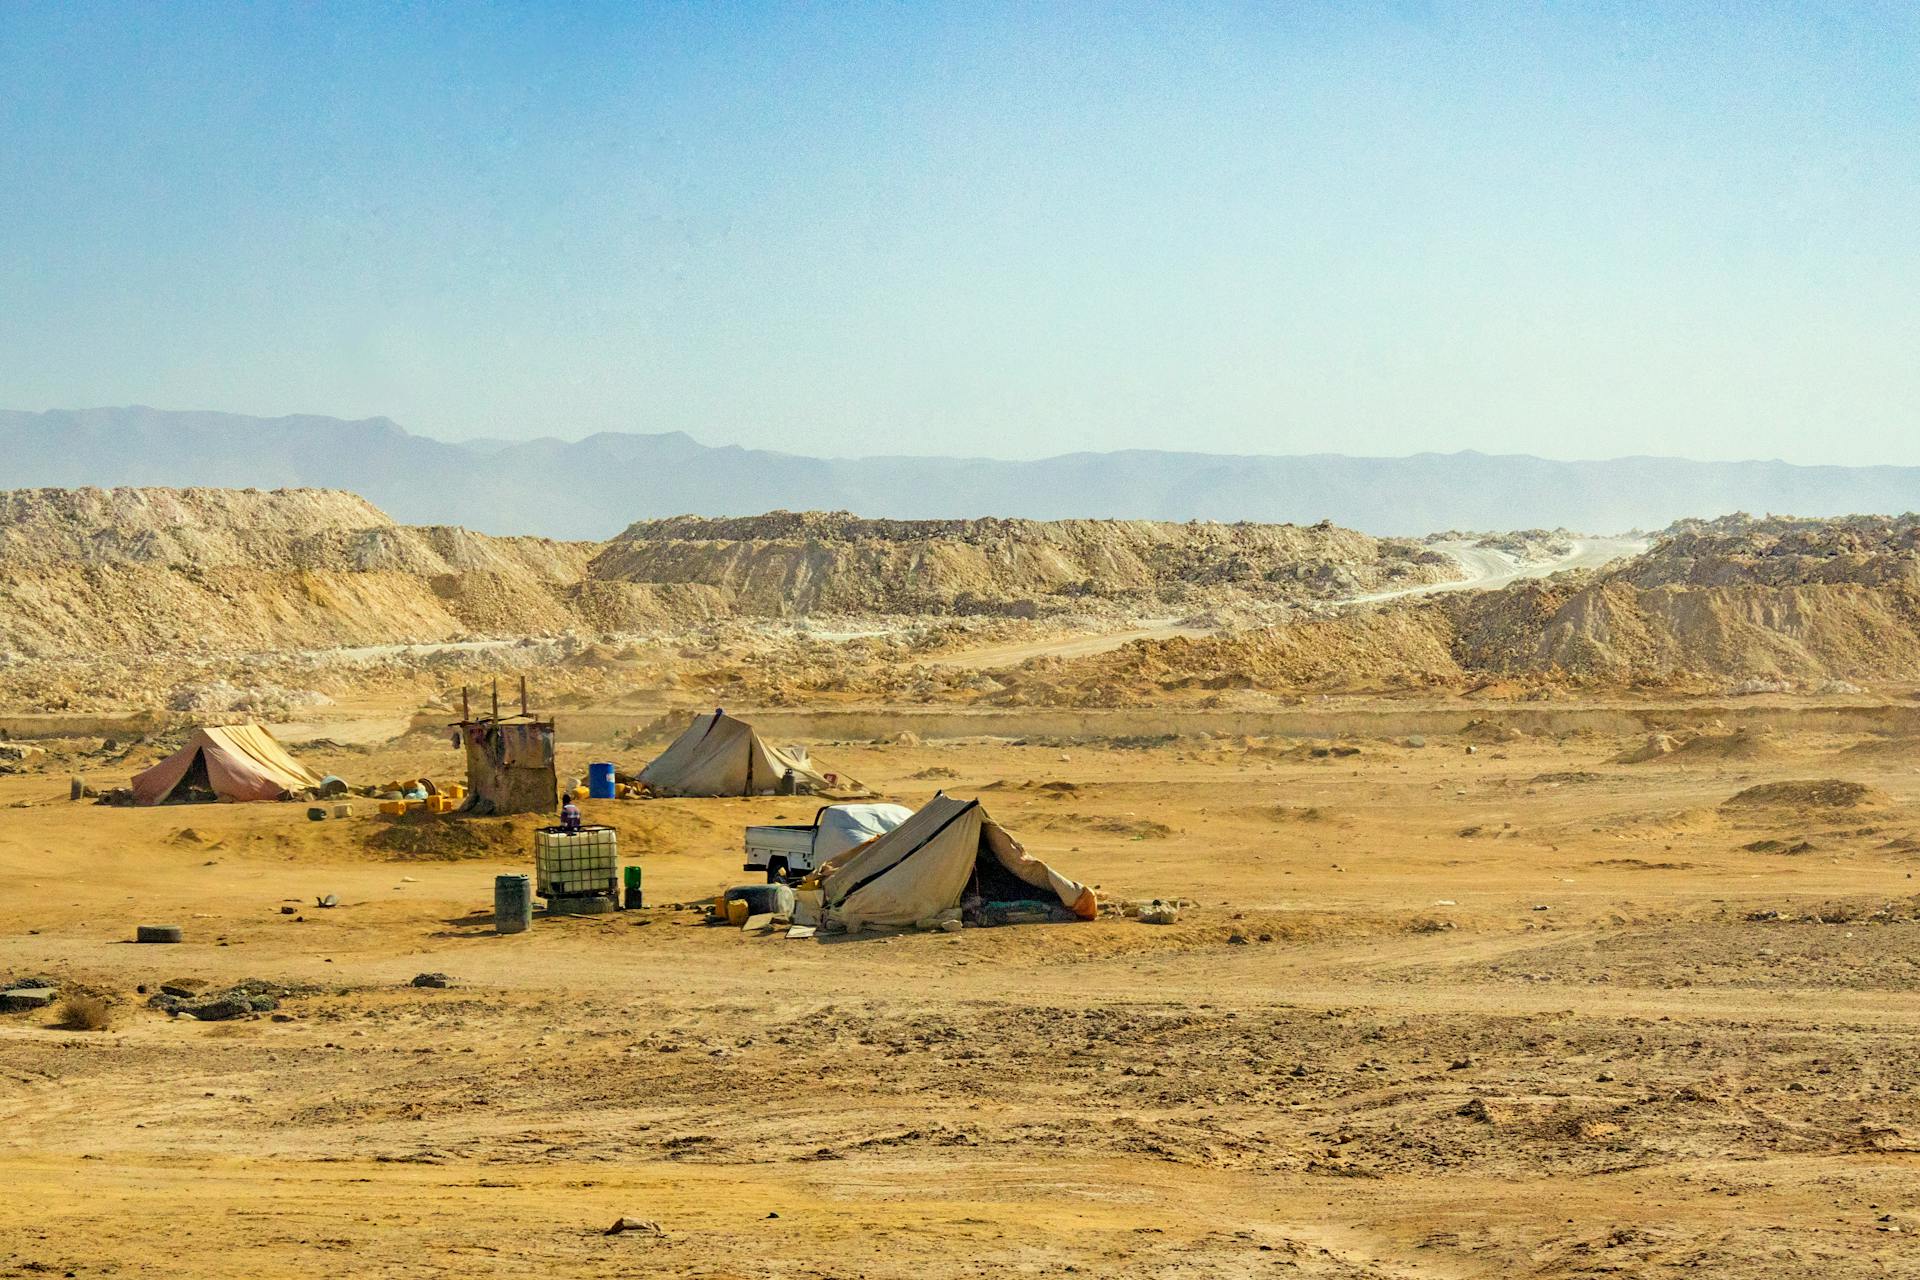 Free stock photo of arid, desert, dry